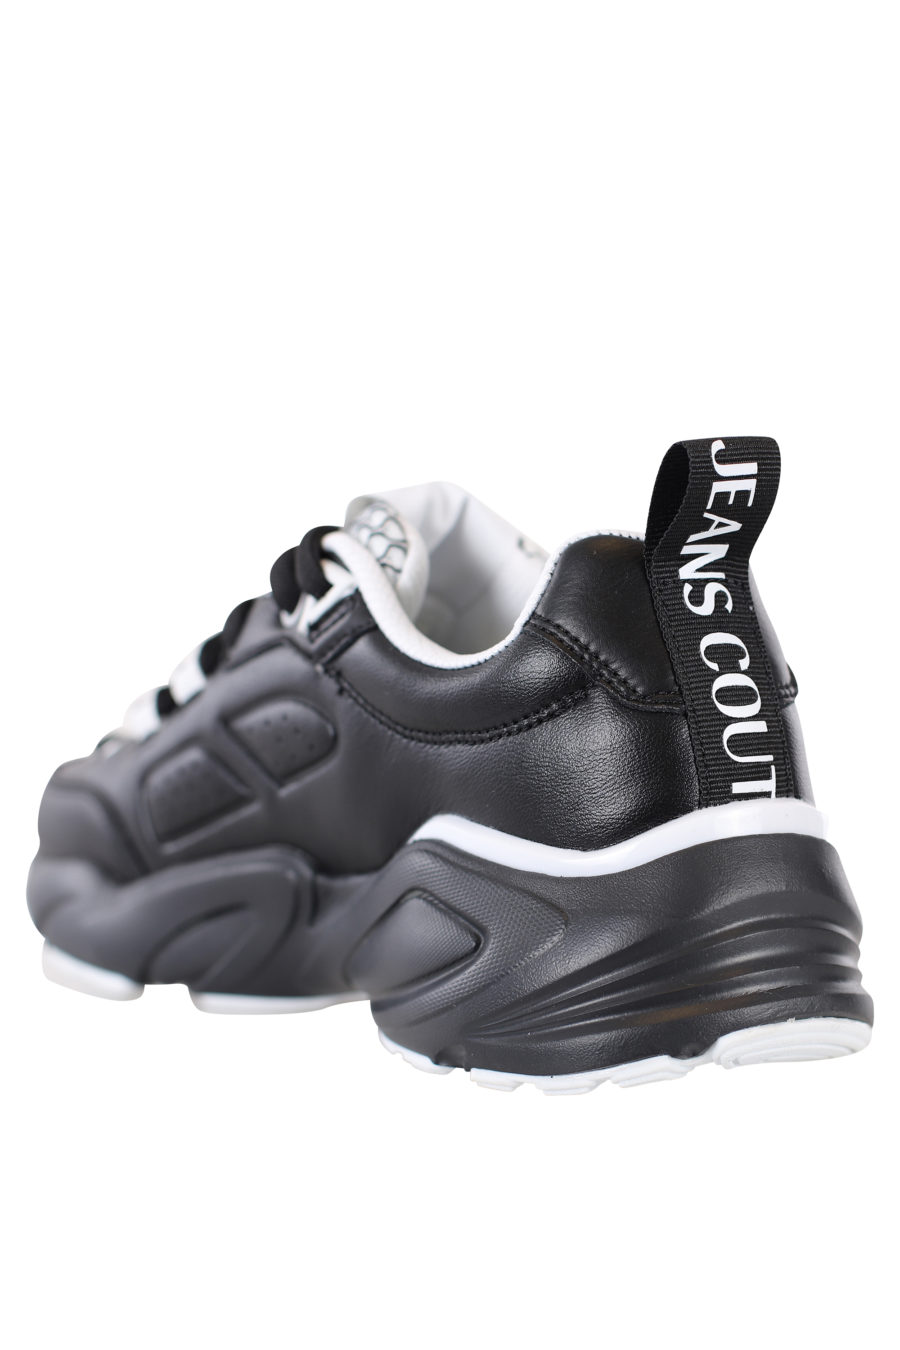 Zapatillas negras con detalles blancos "Wave" - IMG 2181